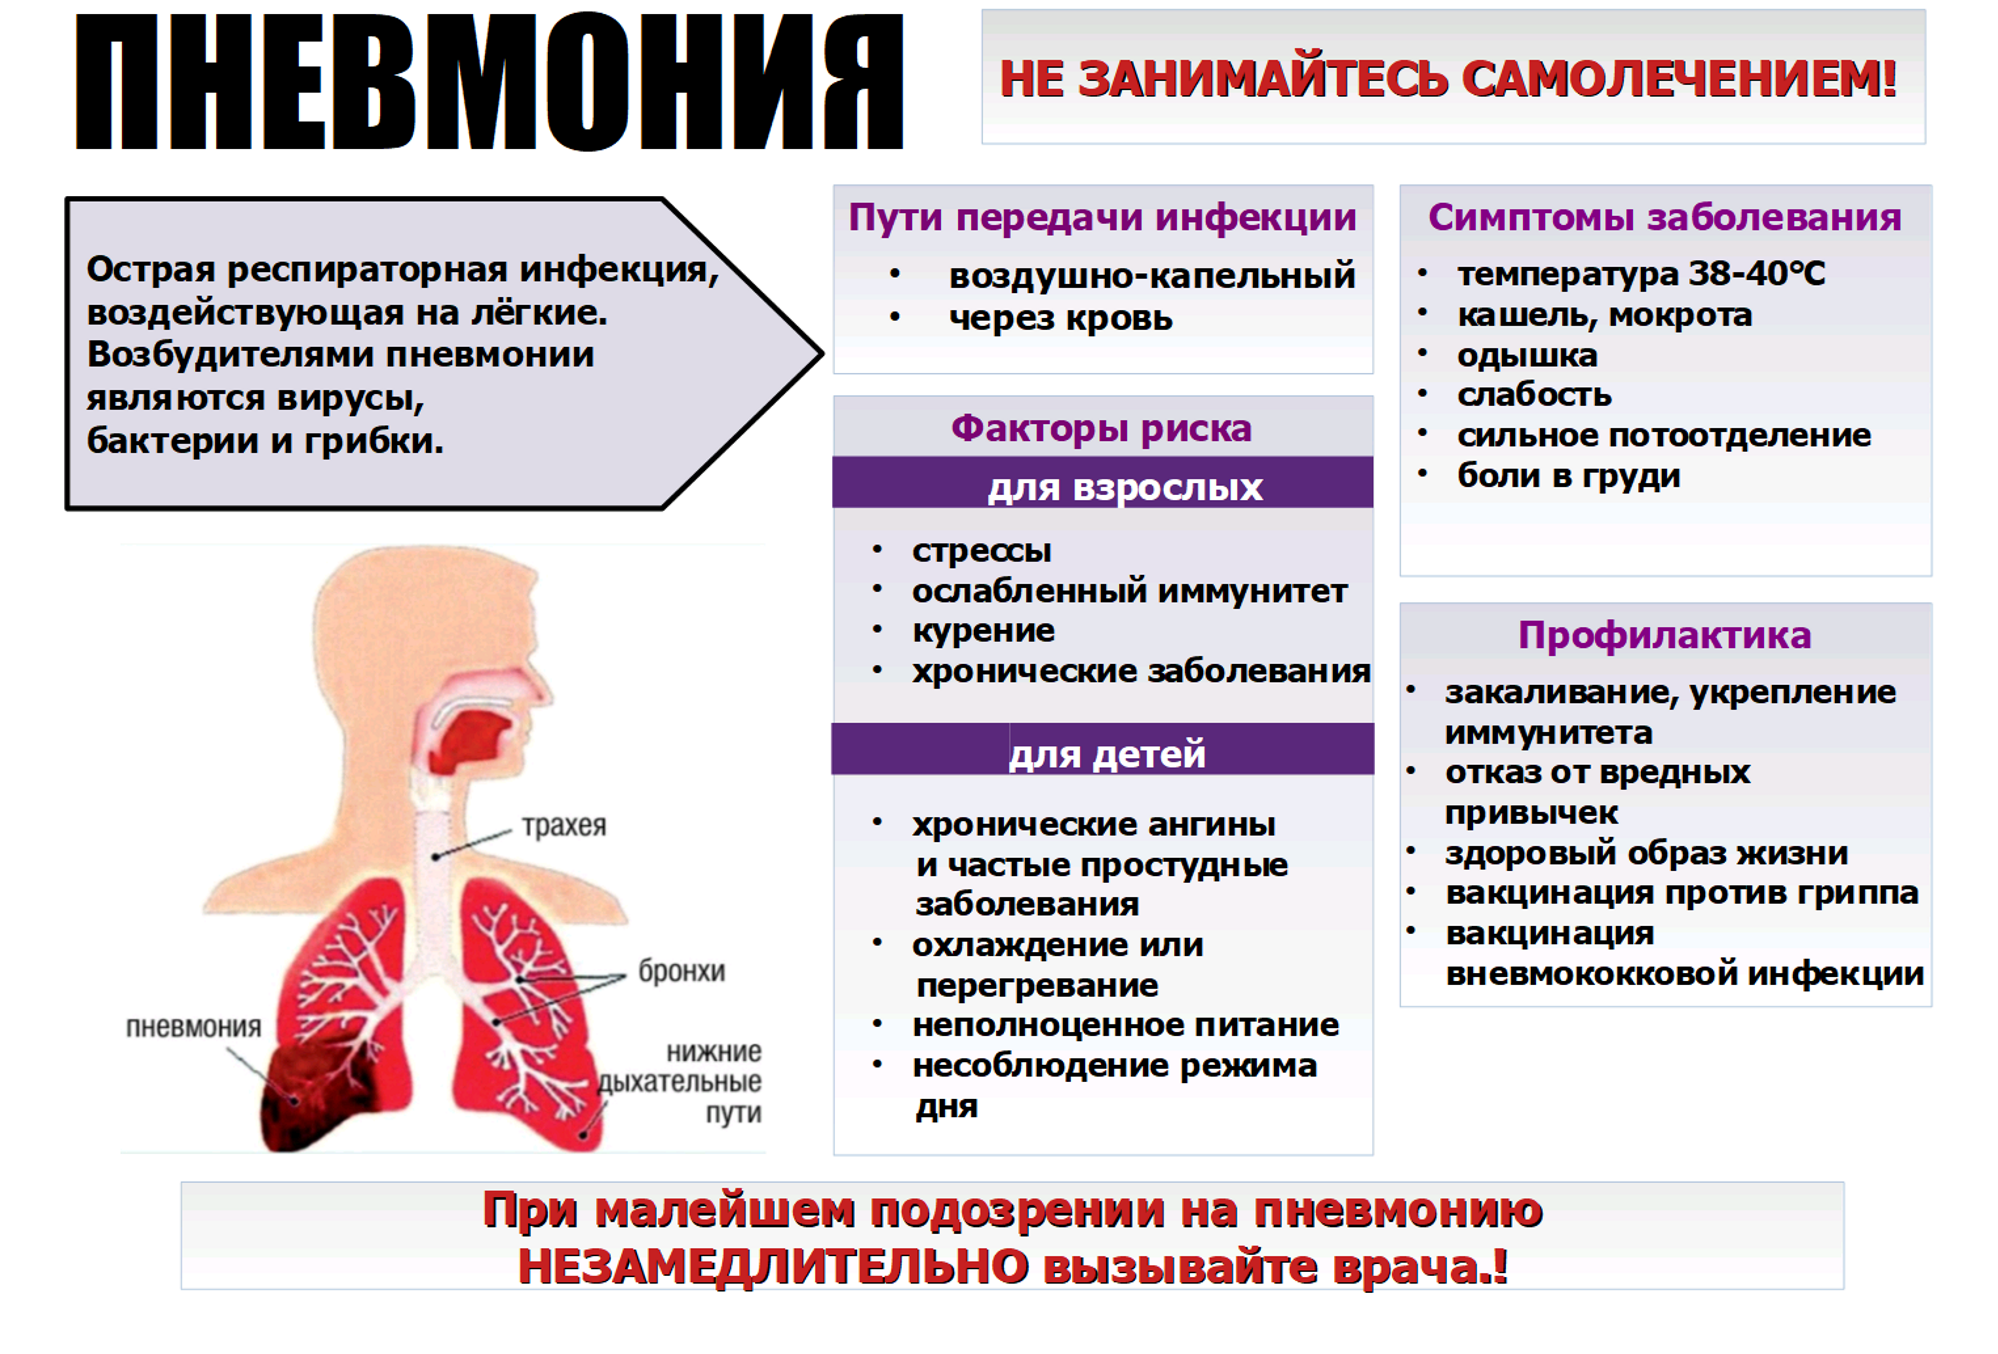 Пневмония - симптомы у взрослых без температуры но с кашлем сухим, признаки воспаления легких, лечение если без хрипов